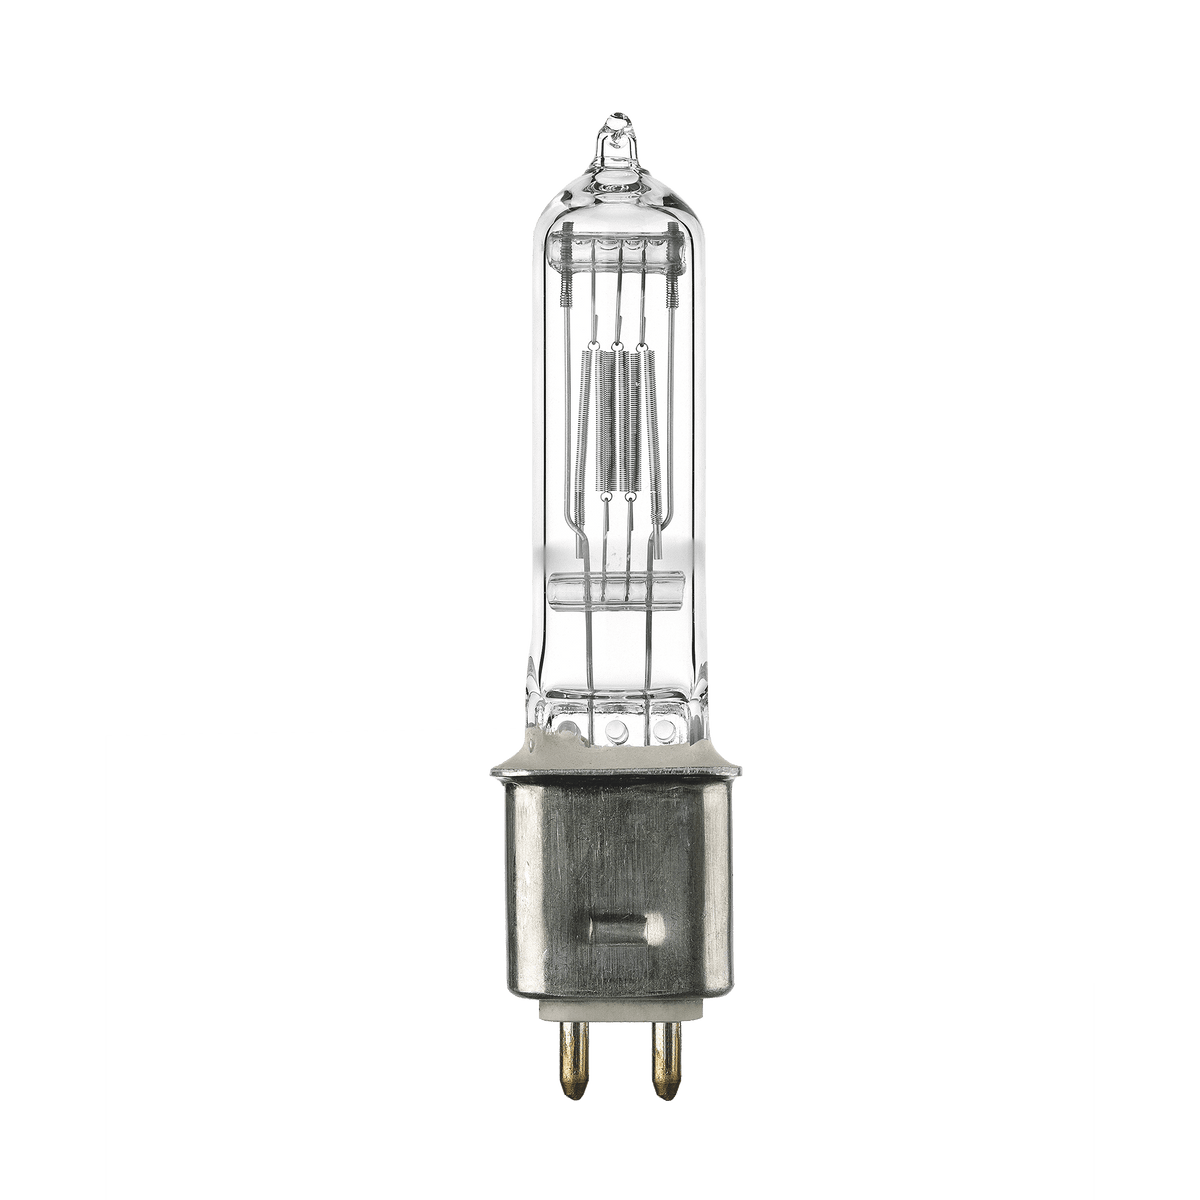 OSRAM GKV 64716 600w 240v G9.5 Lamp